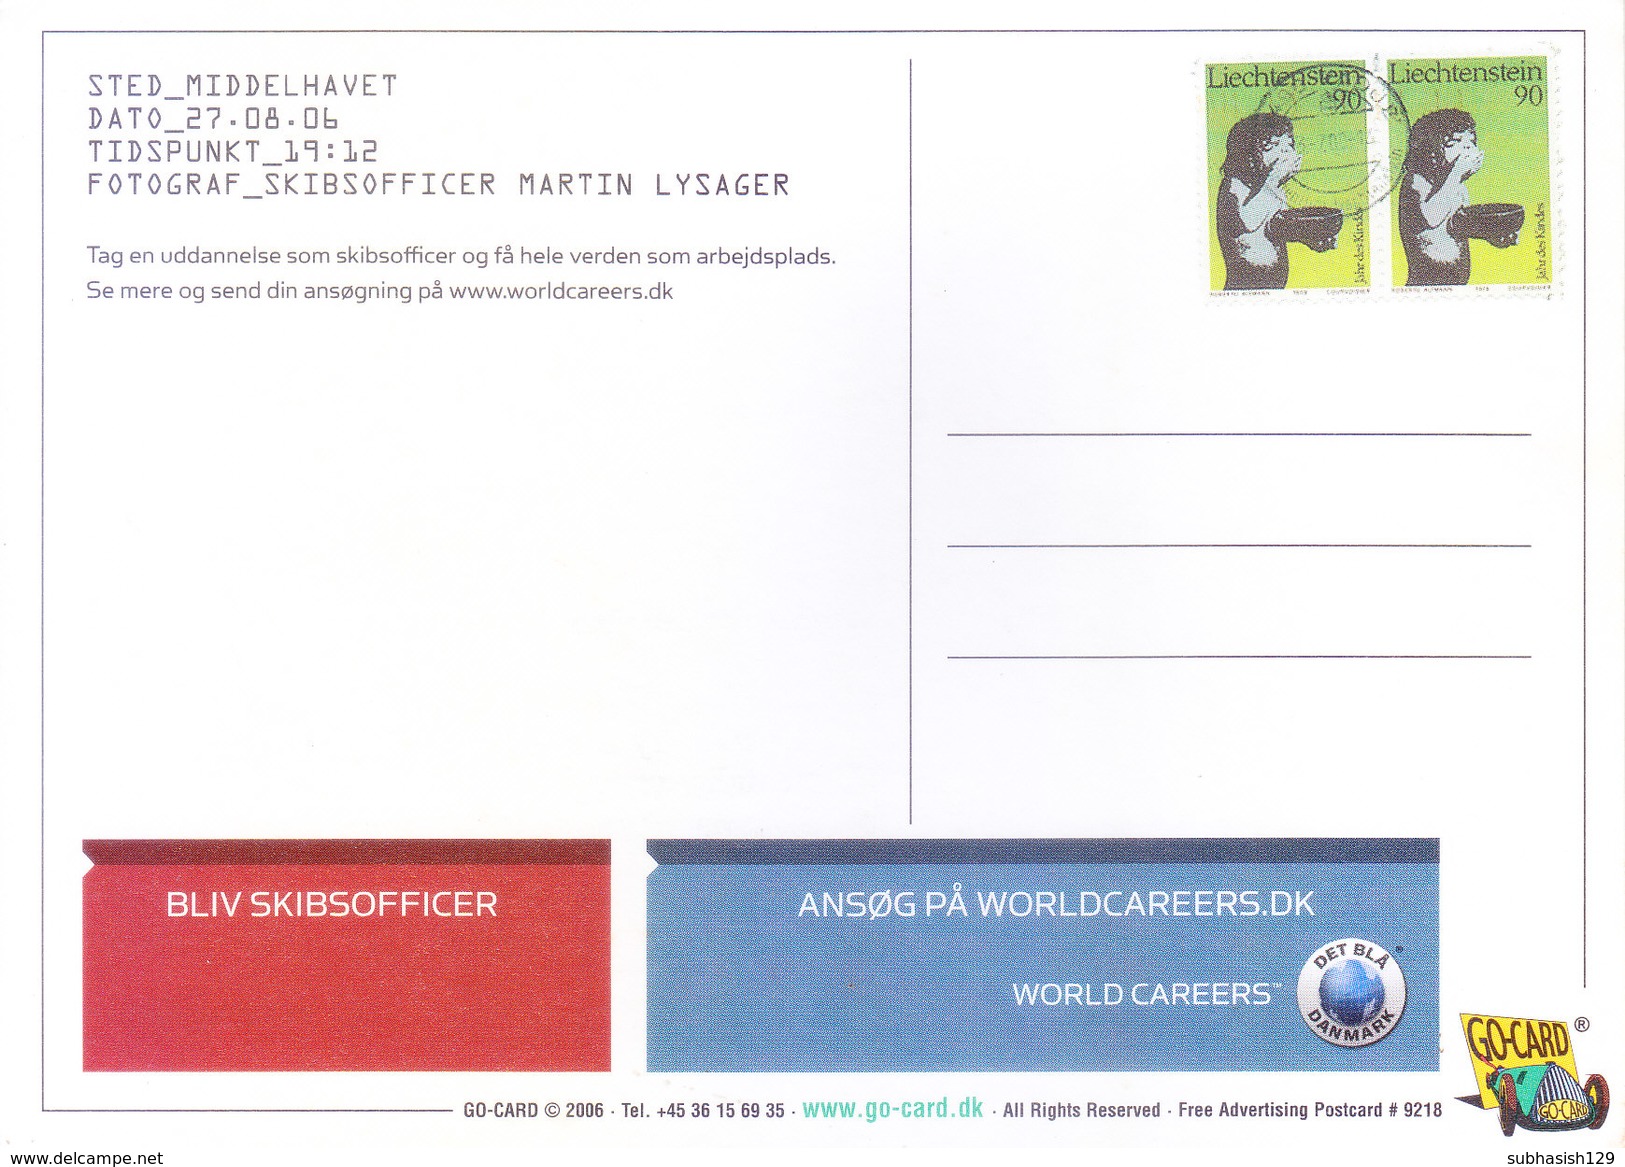 LIECHTENSTEIN - MAXIM CARD - 2006 - GREETINGS, TOURISM THEME - Briefe U. Dokumente